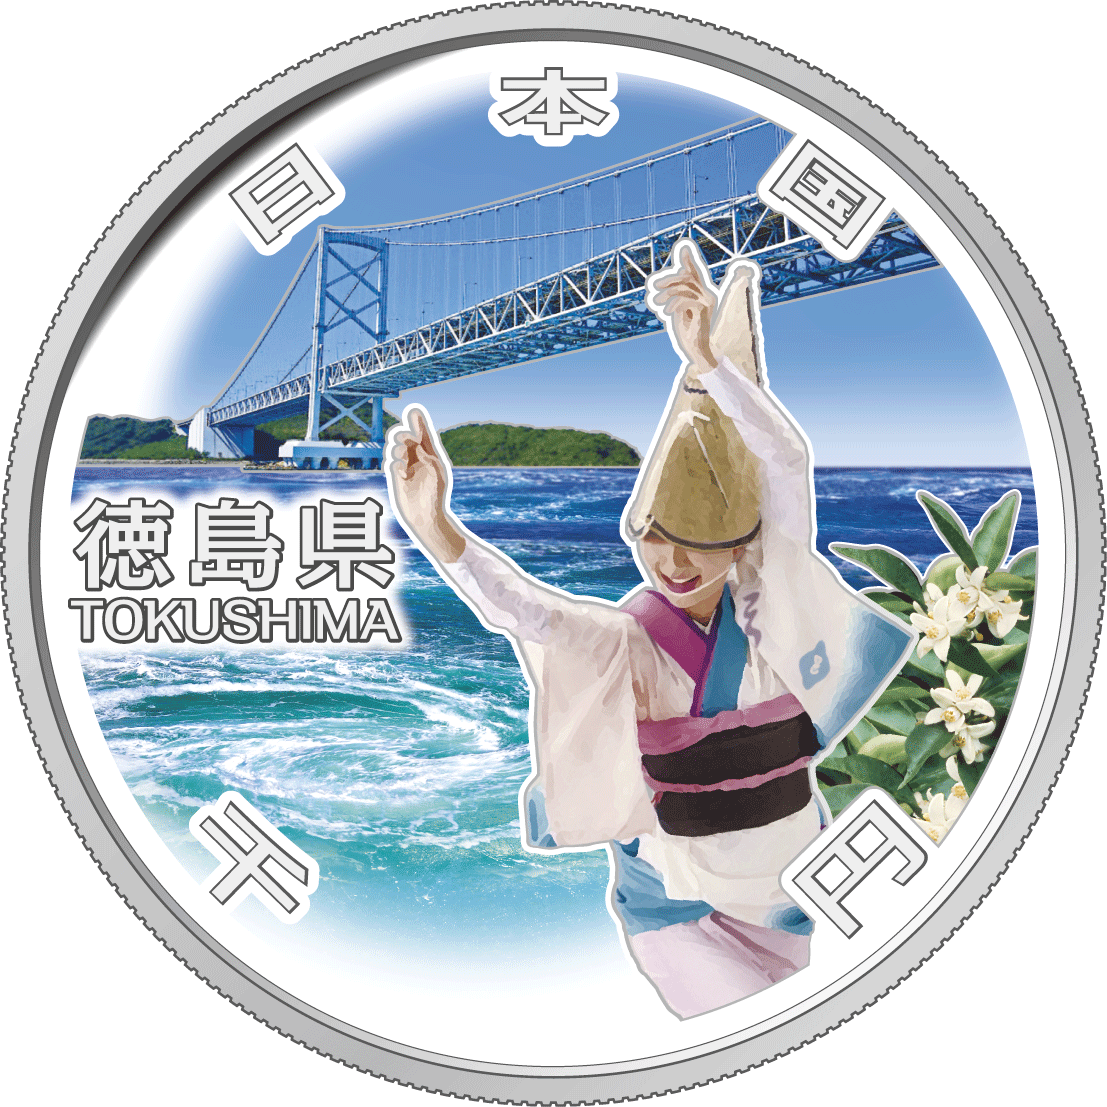 Image of Tokushima design of 1,000 yen